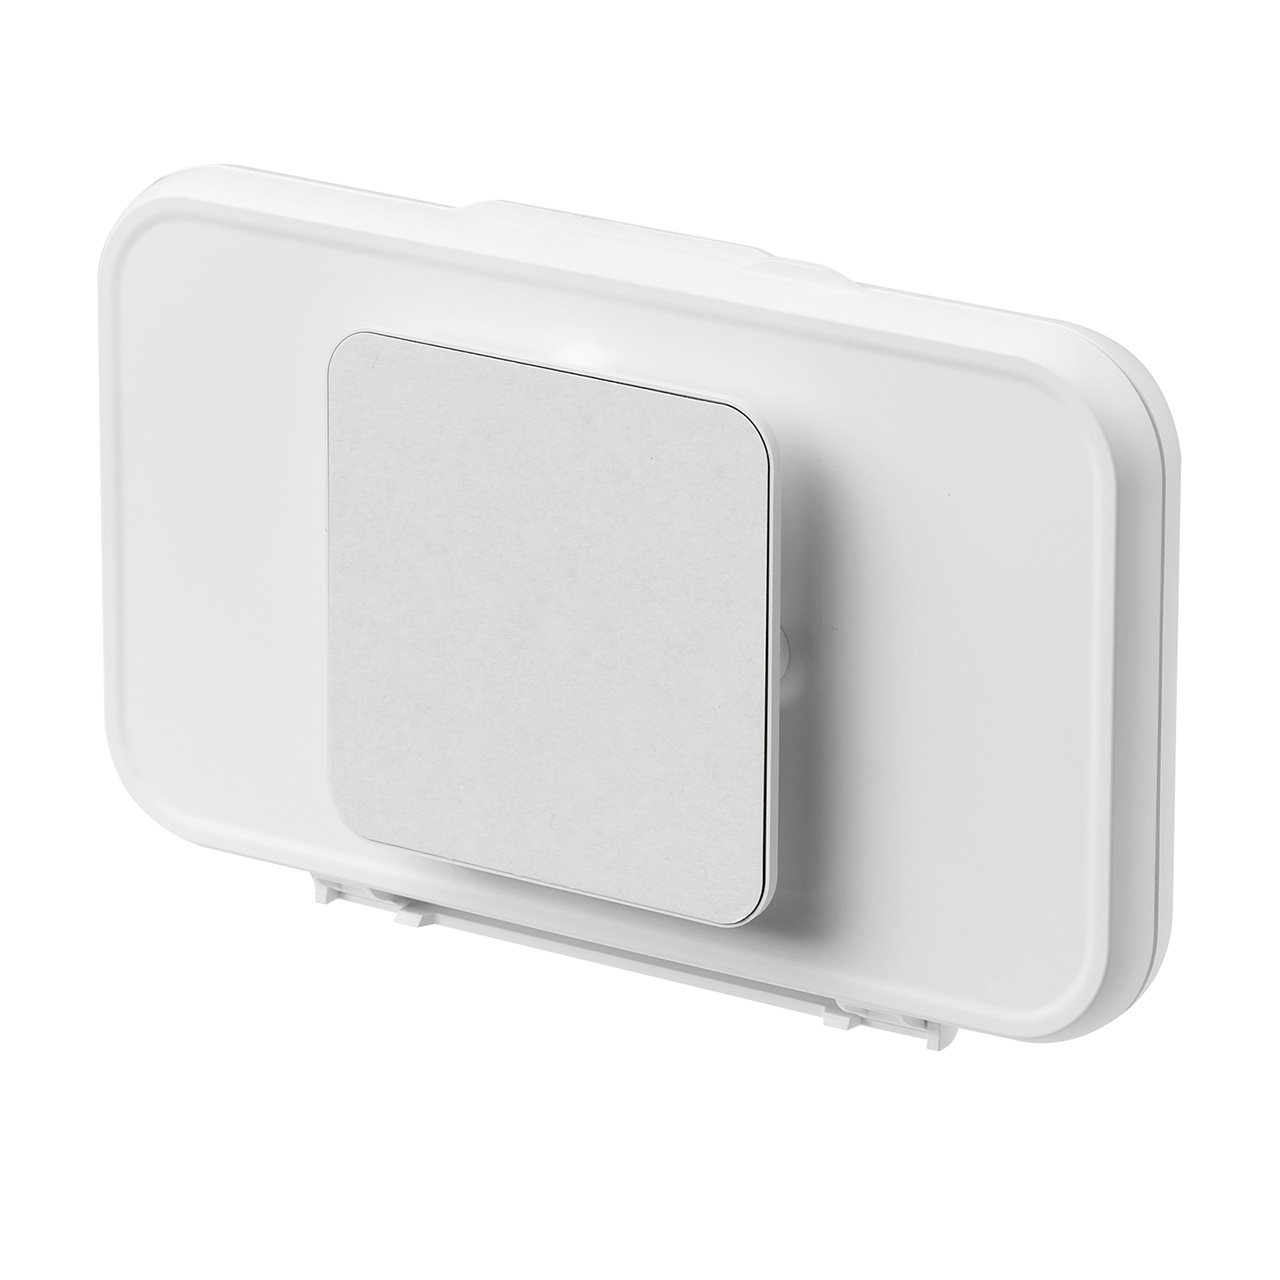 壁掛け 防水ハードケース スマホ用 6.8インチ対応 取付簡単 360度回転 着脱簡単 IPX5 スマホスタンド お風呂 キッチン 浴室 洗面所 iPhone15 14 13 SE Android 200-SPC032WP